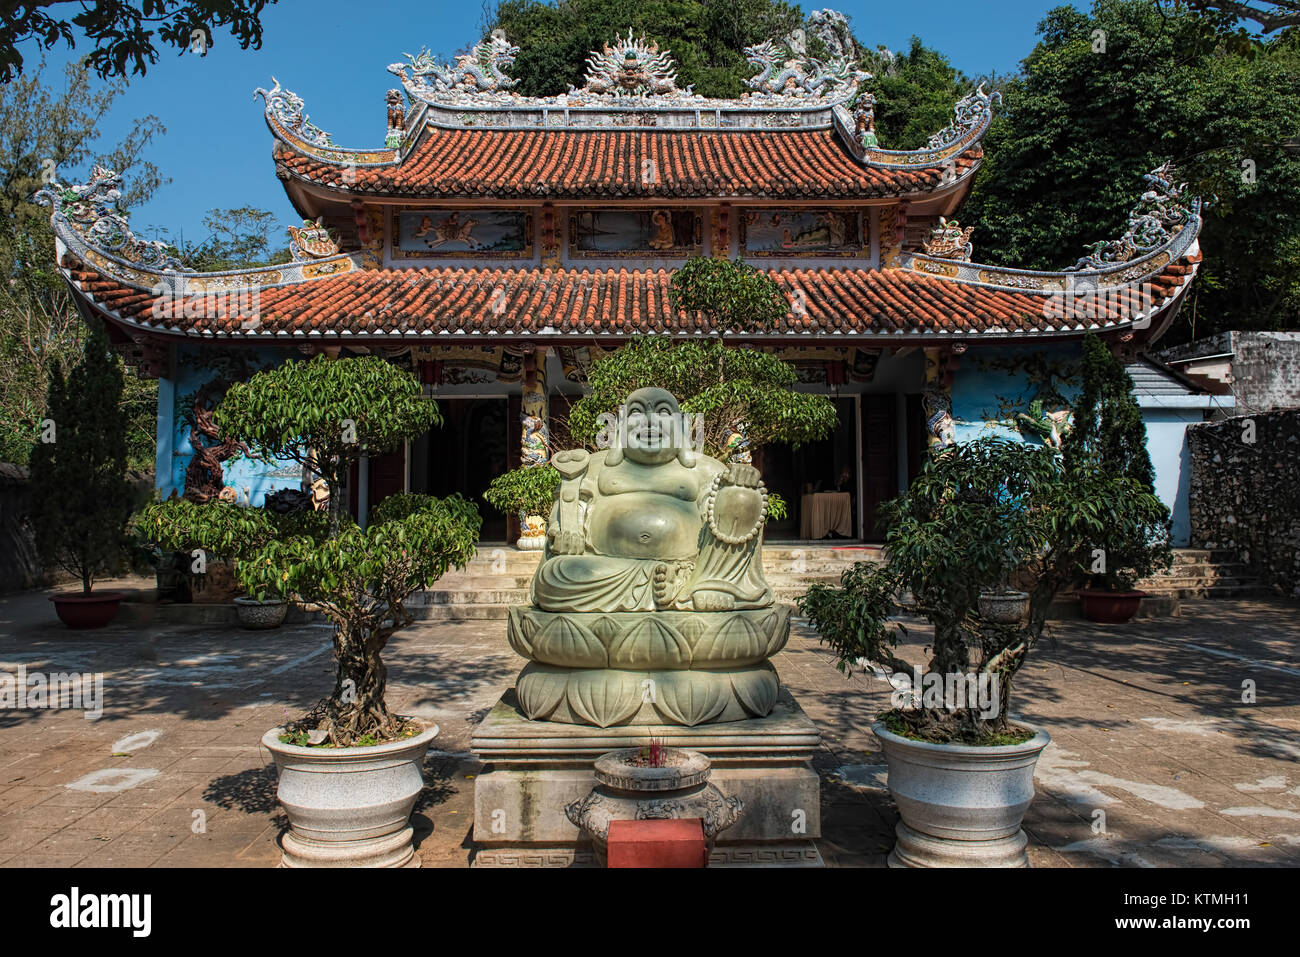 Garden of the Linh Ung Pagoda, Marble Mountains, Five elements mountains, Da Nang, Vietnam Stock Photo